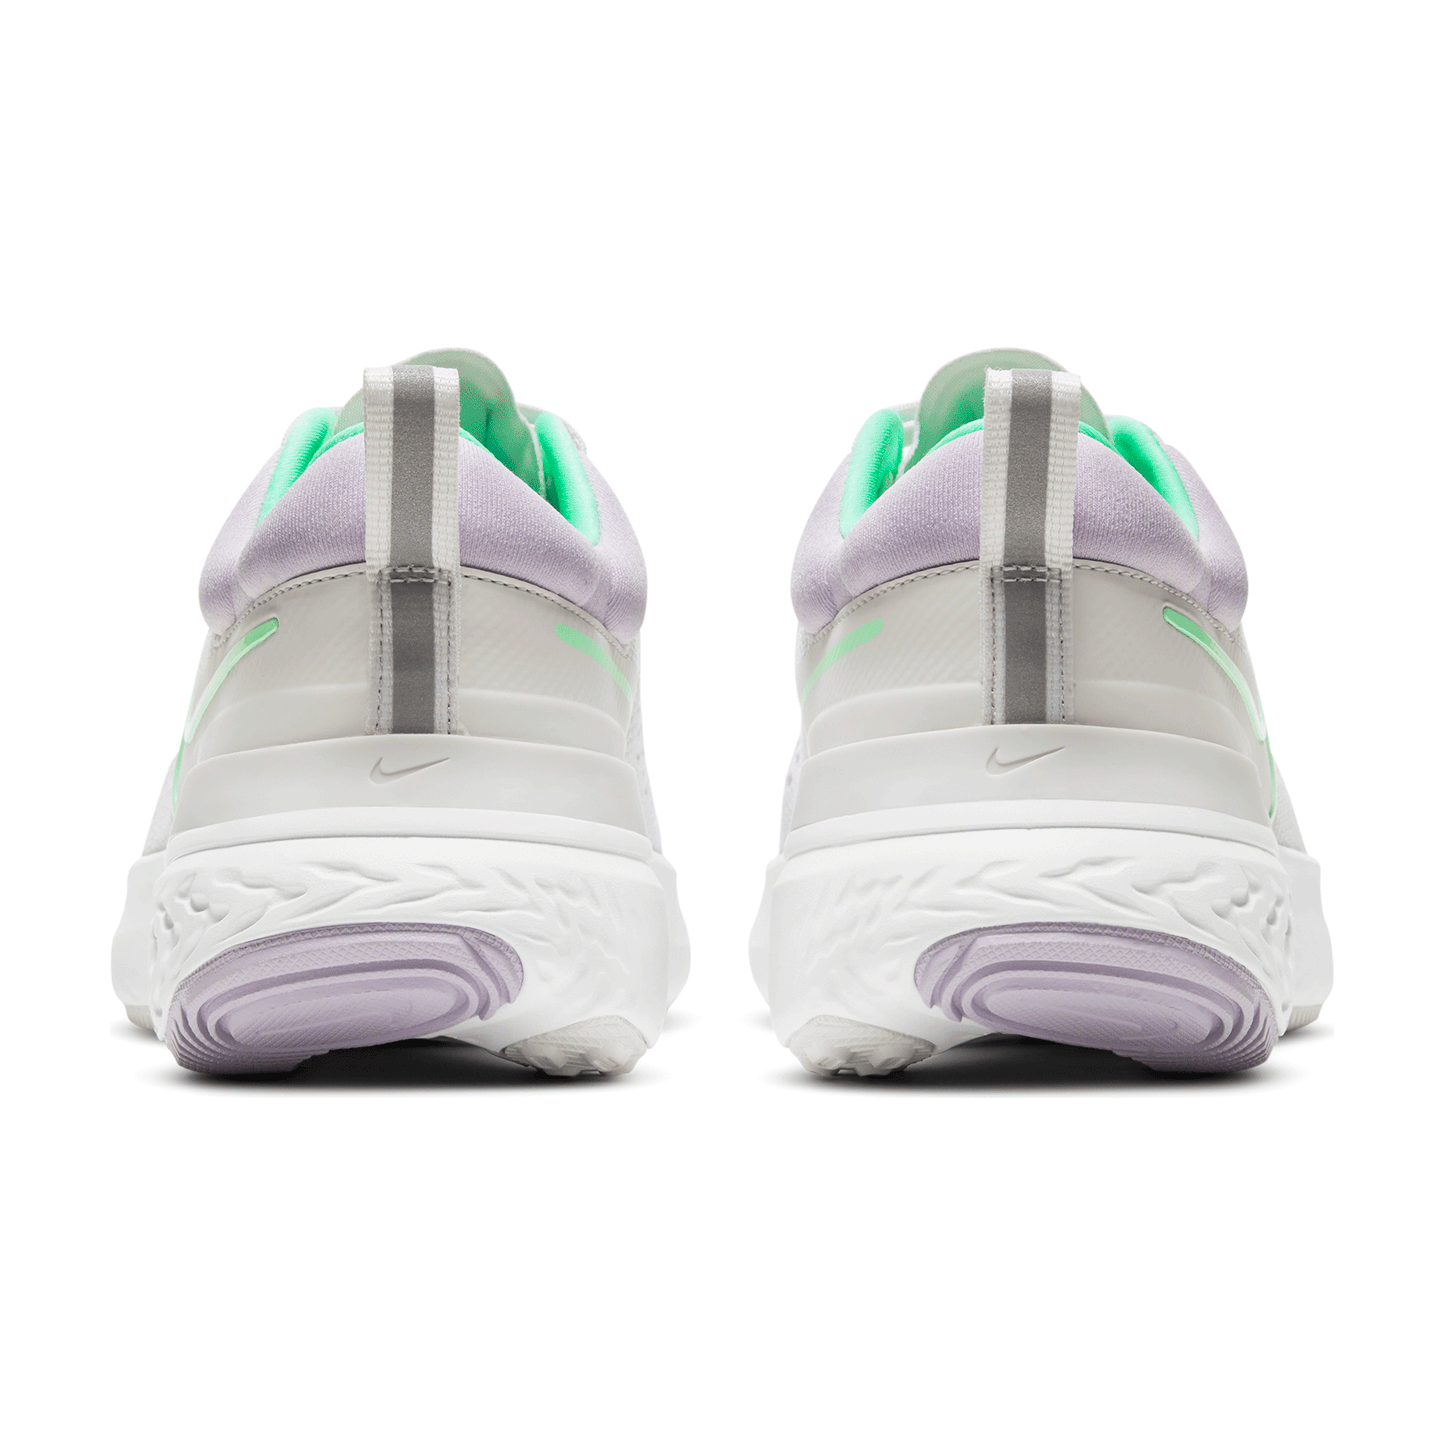 Women's Nike React Miler 2 Running Shoe - Platinum Tint/Green Glow/White - Regular (B)